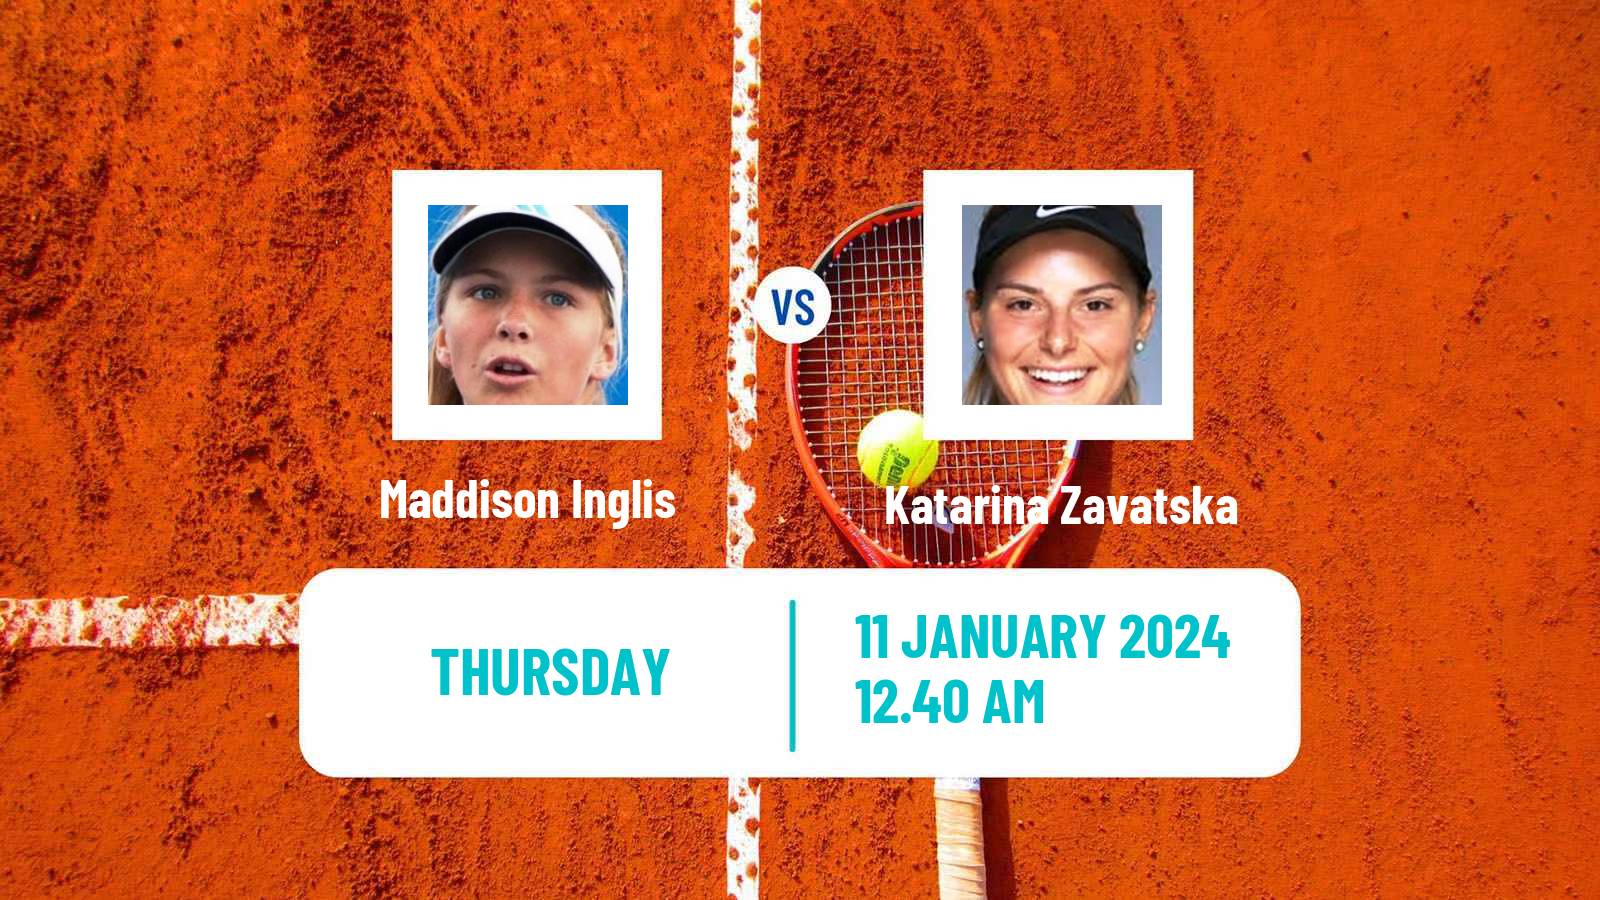 Tennis WTA Australian Open Maddison Inglis - Katarina Zavatska